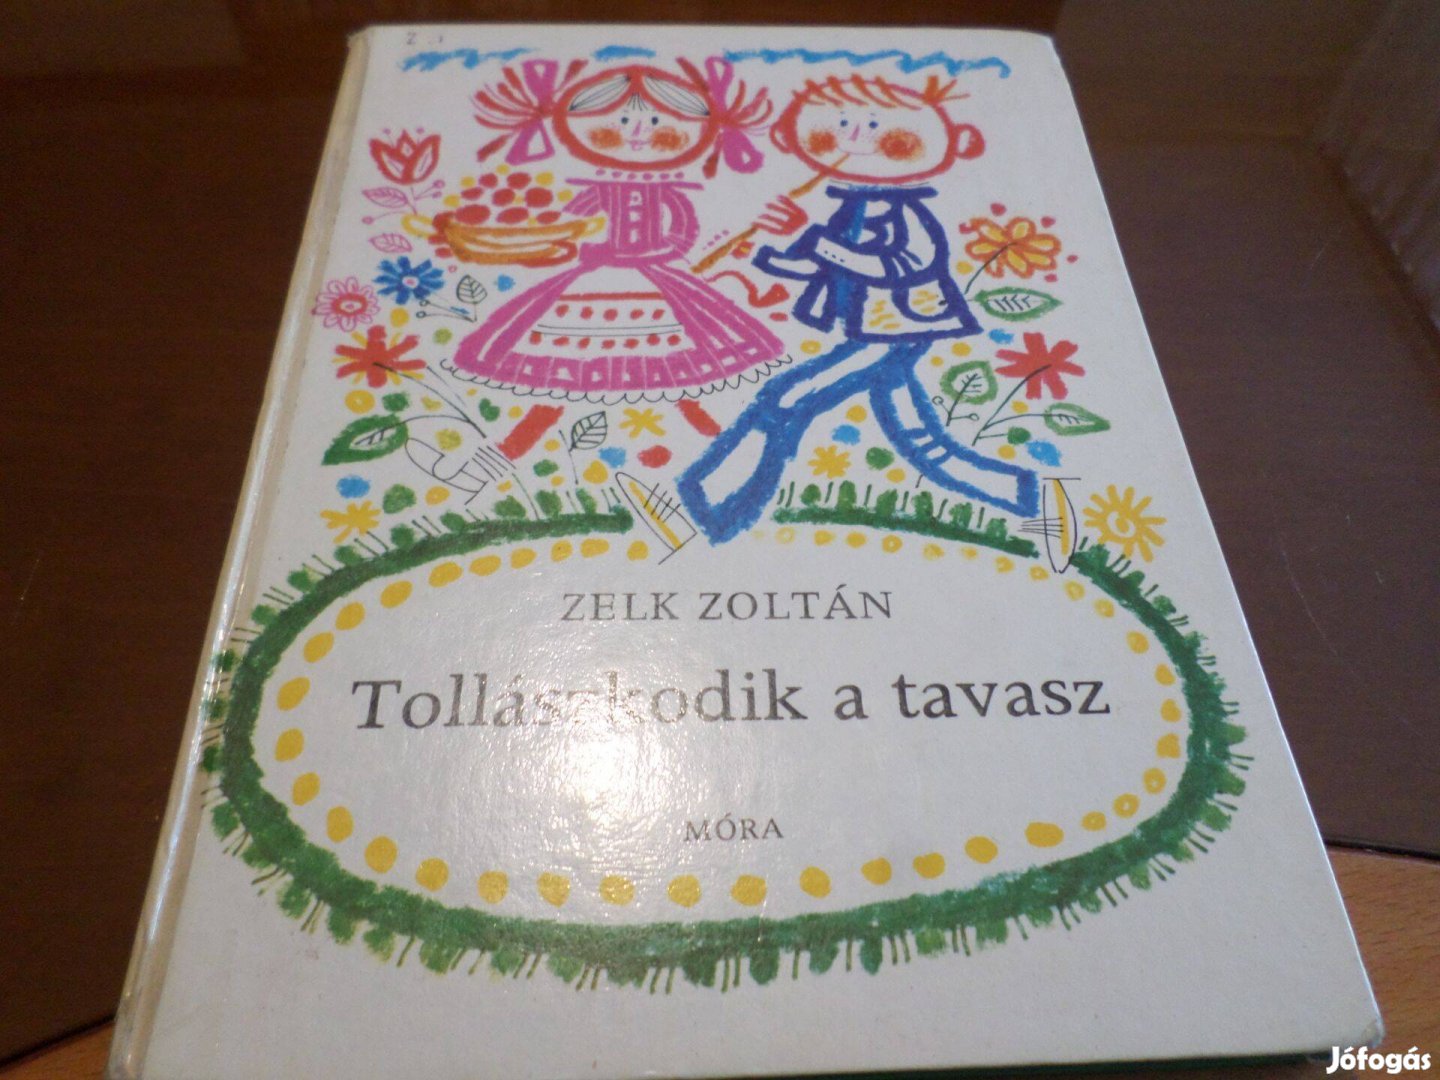 Zelk Zoltán Tollászkodik a tavasz, Kass jános rajz. 1976, Gyermekkönyv